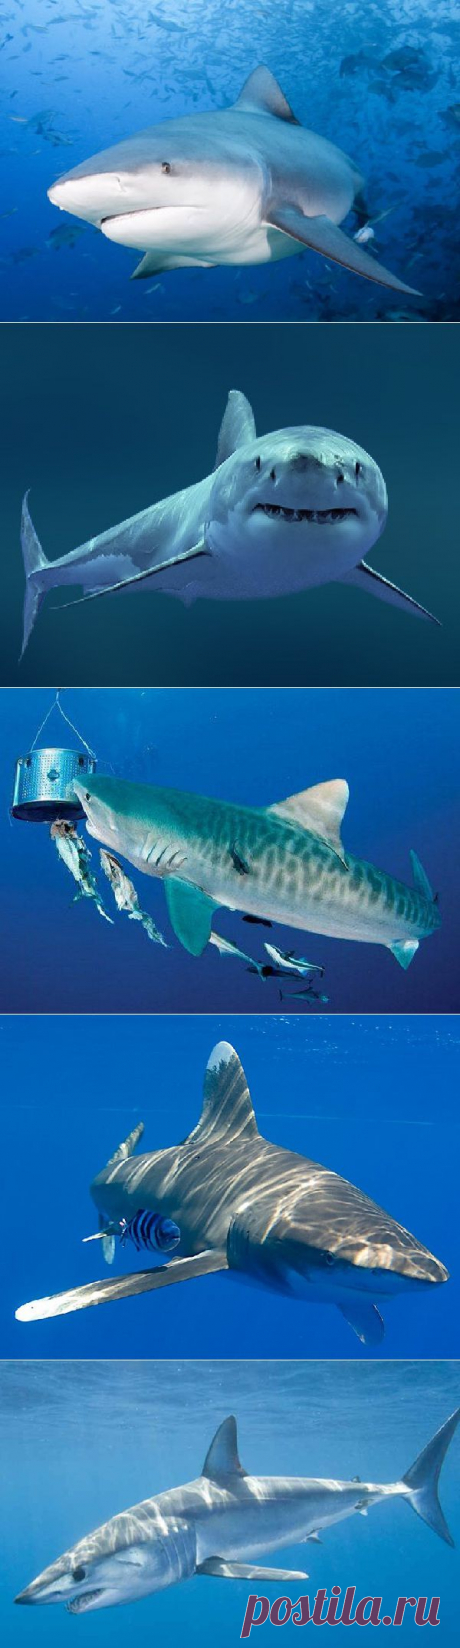 Самые опасные акулы планеты - сайт Природа